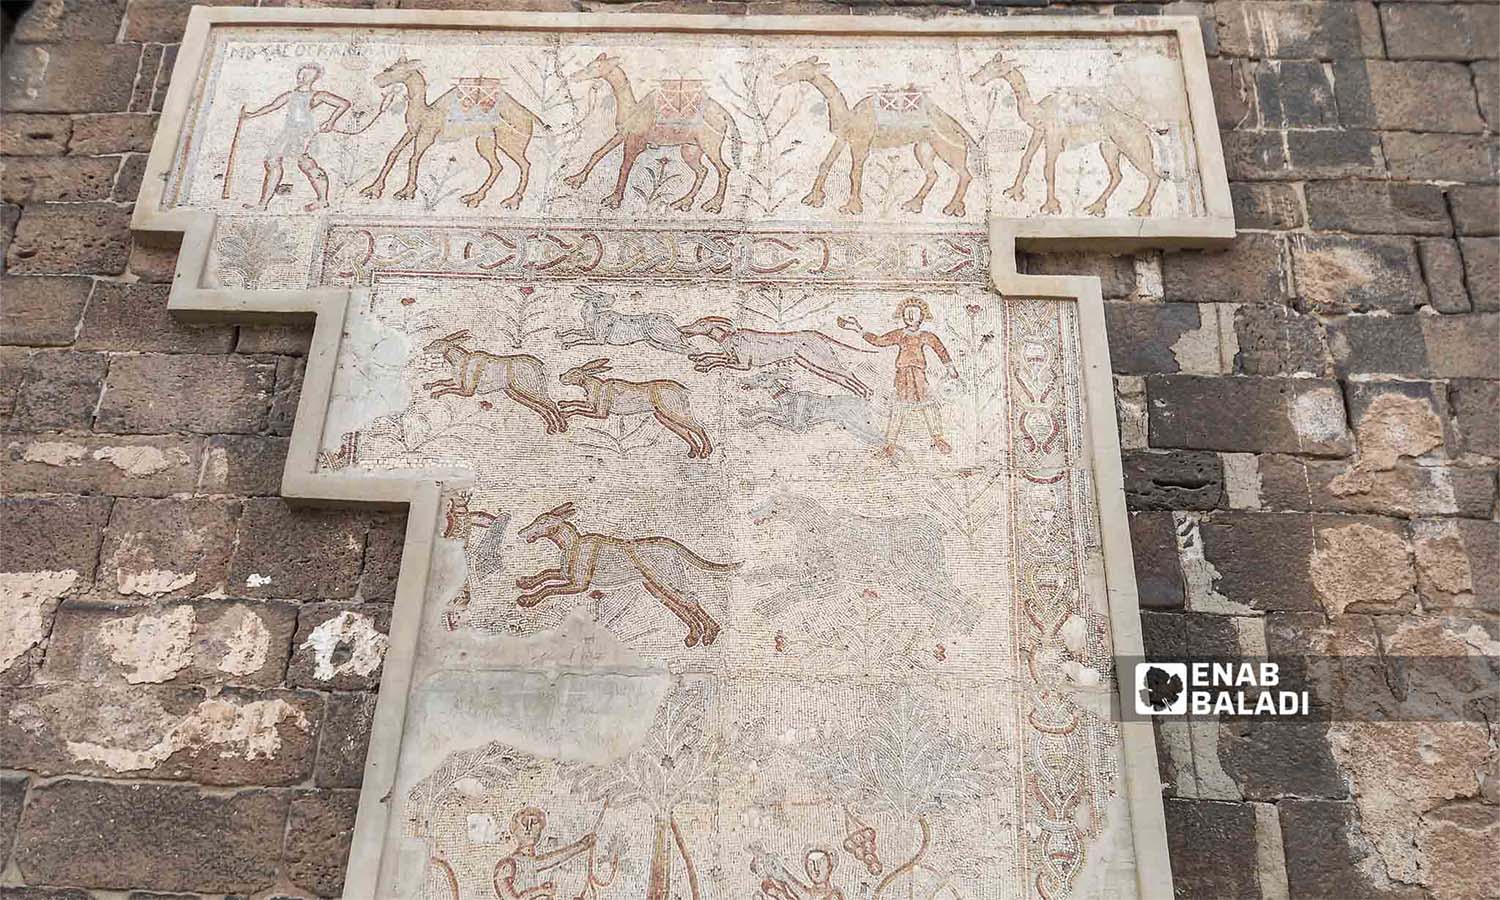 فسيفساء رومانية قديمة في بصرى الشام في محافظة درعا جنوبي سوريا- 13 من تشرين الاول 2023 (عنب بلدي/سارة الأحمد)